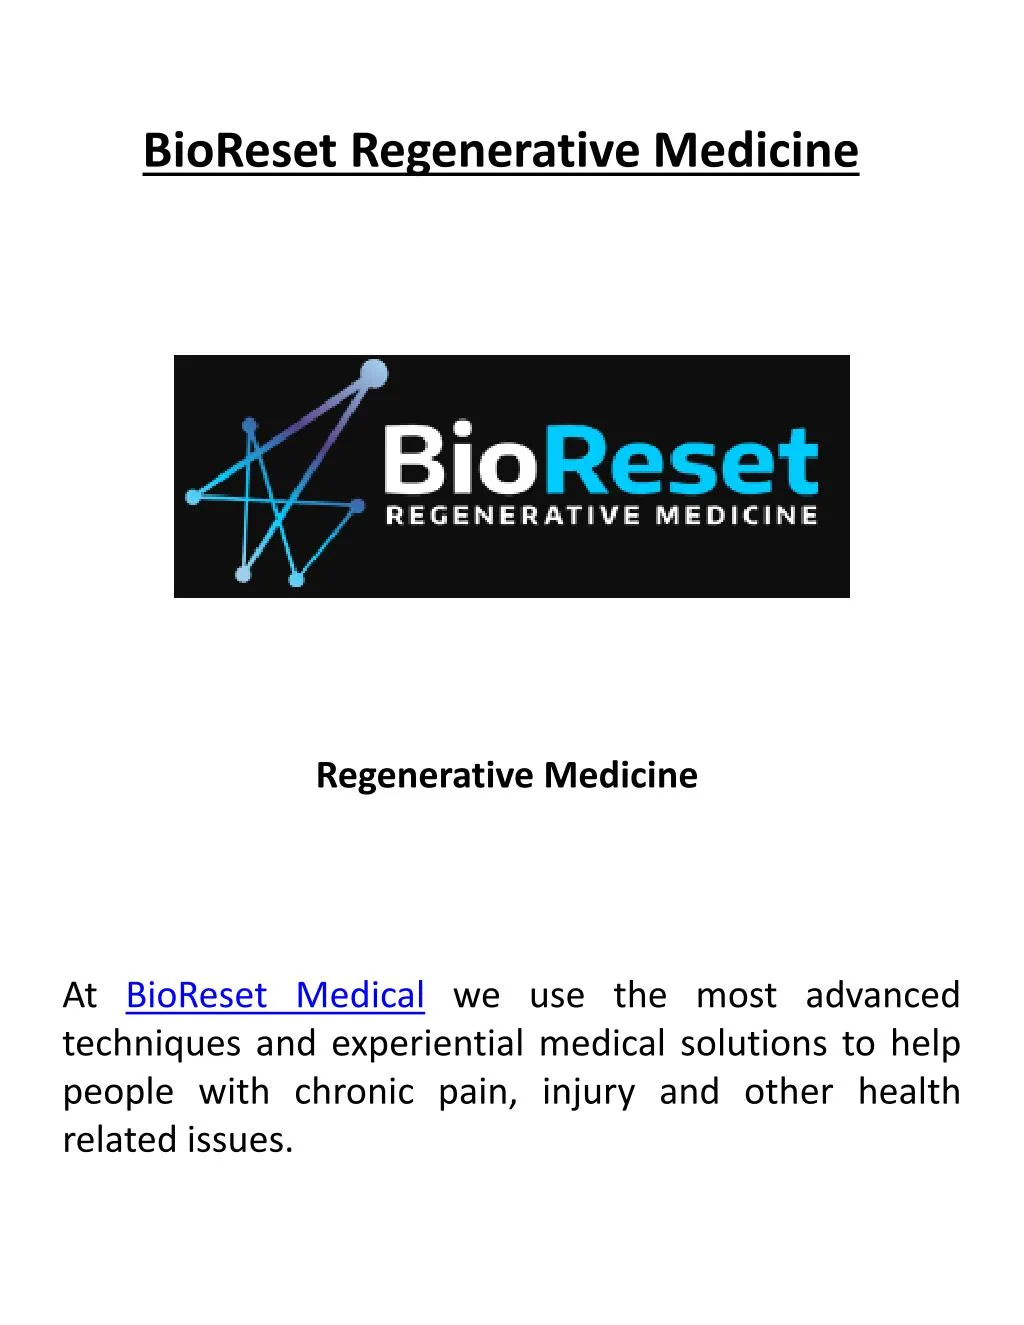 bioreset regenerative medicine